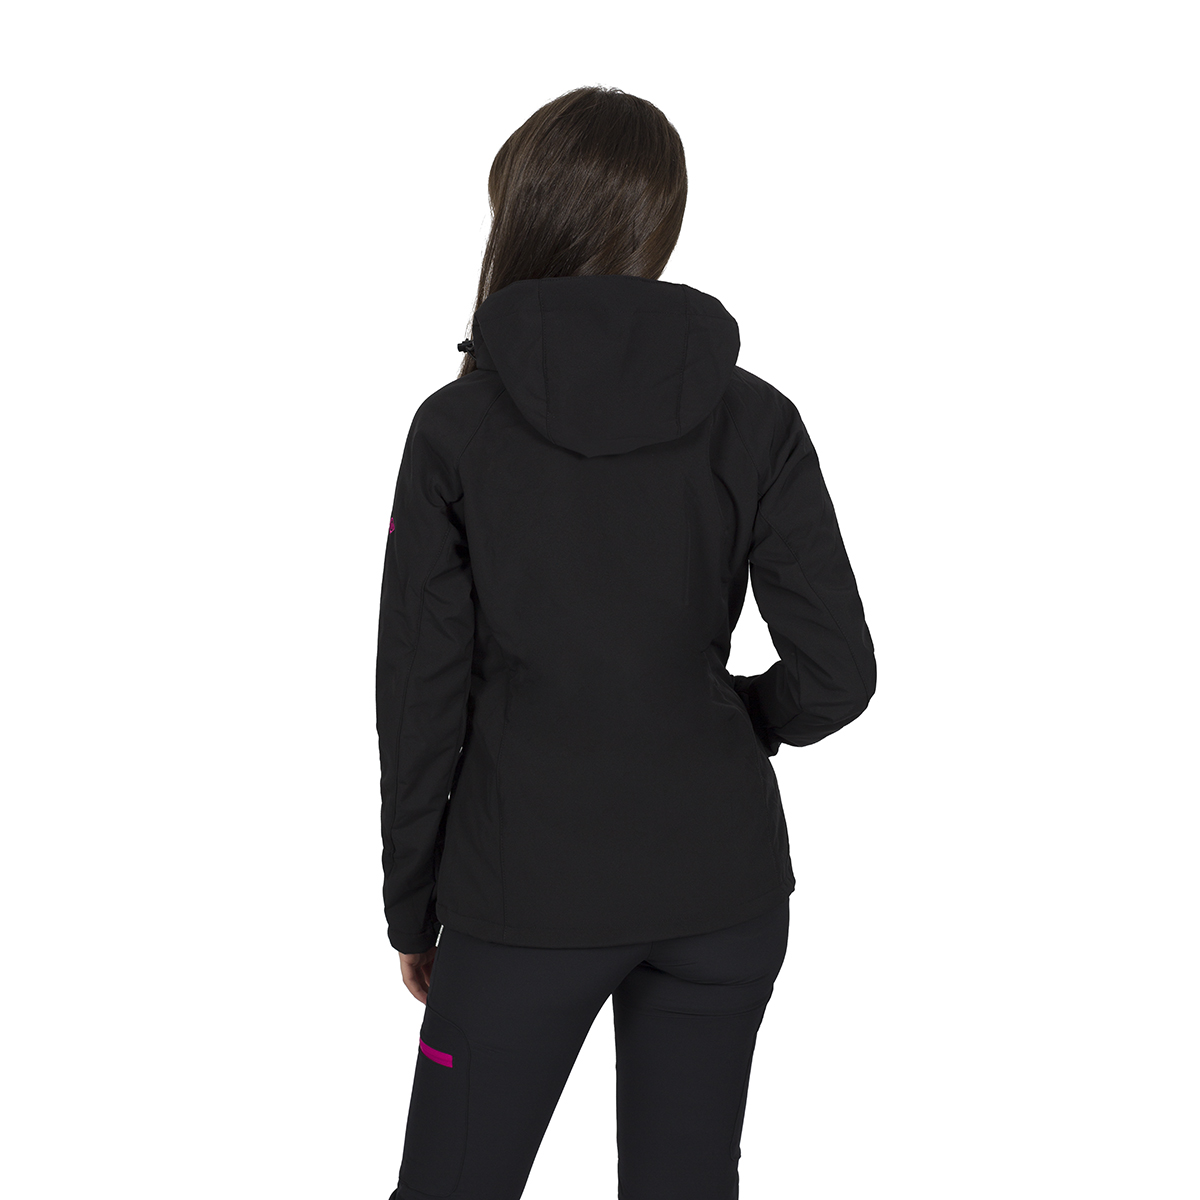 Izas Oshawa Women's Hooded Softshell Jacket (Small, Black/Fuchsia) - image 2 of 4